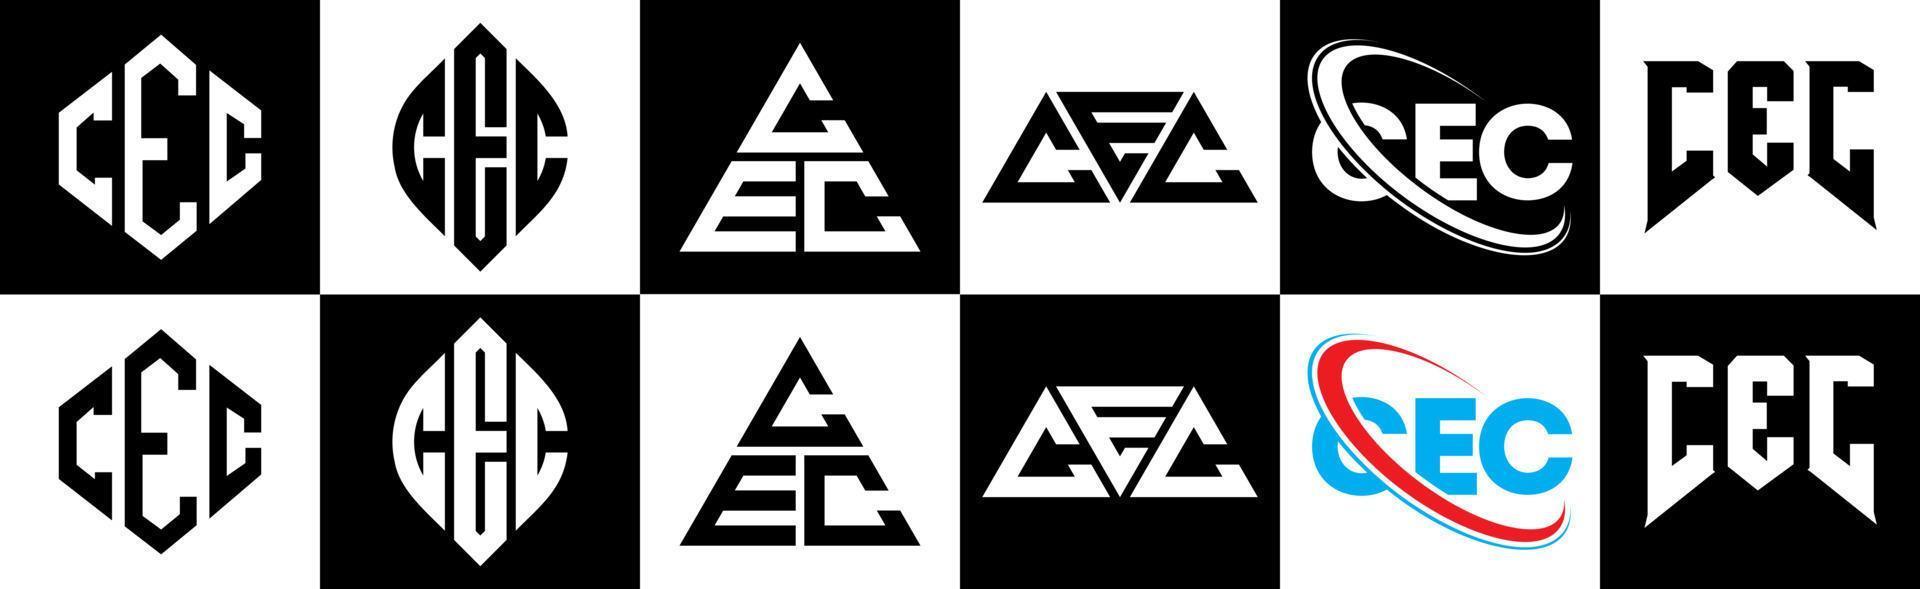 cec-Buchstaben-Logo-Design in sechs Stilen. cec polygon, kreis, dreieck, sechseck, flacher und einfacher stil mit schwarz-weißem buchstabenlogo in einer zeichenfläche. cec minimalistisches und klassisches Logo vektor